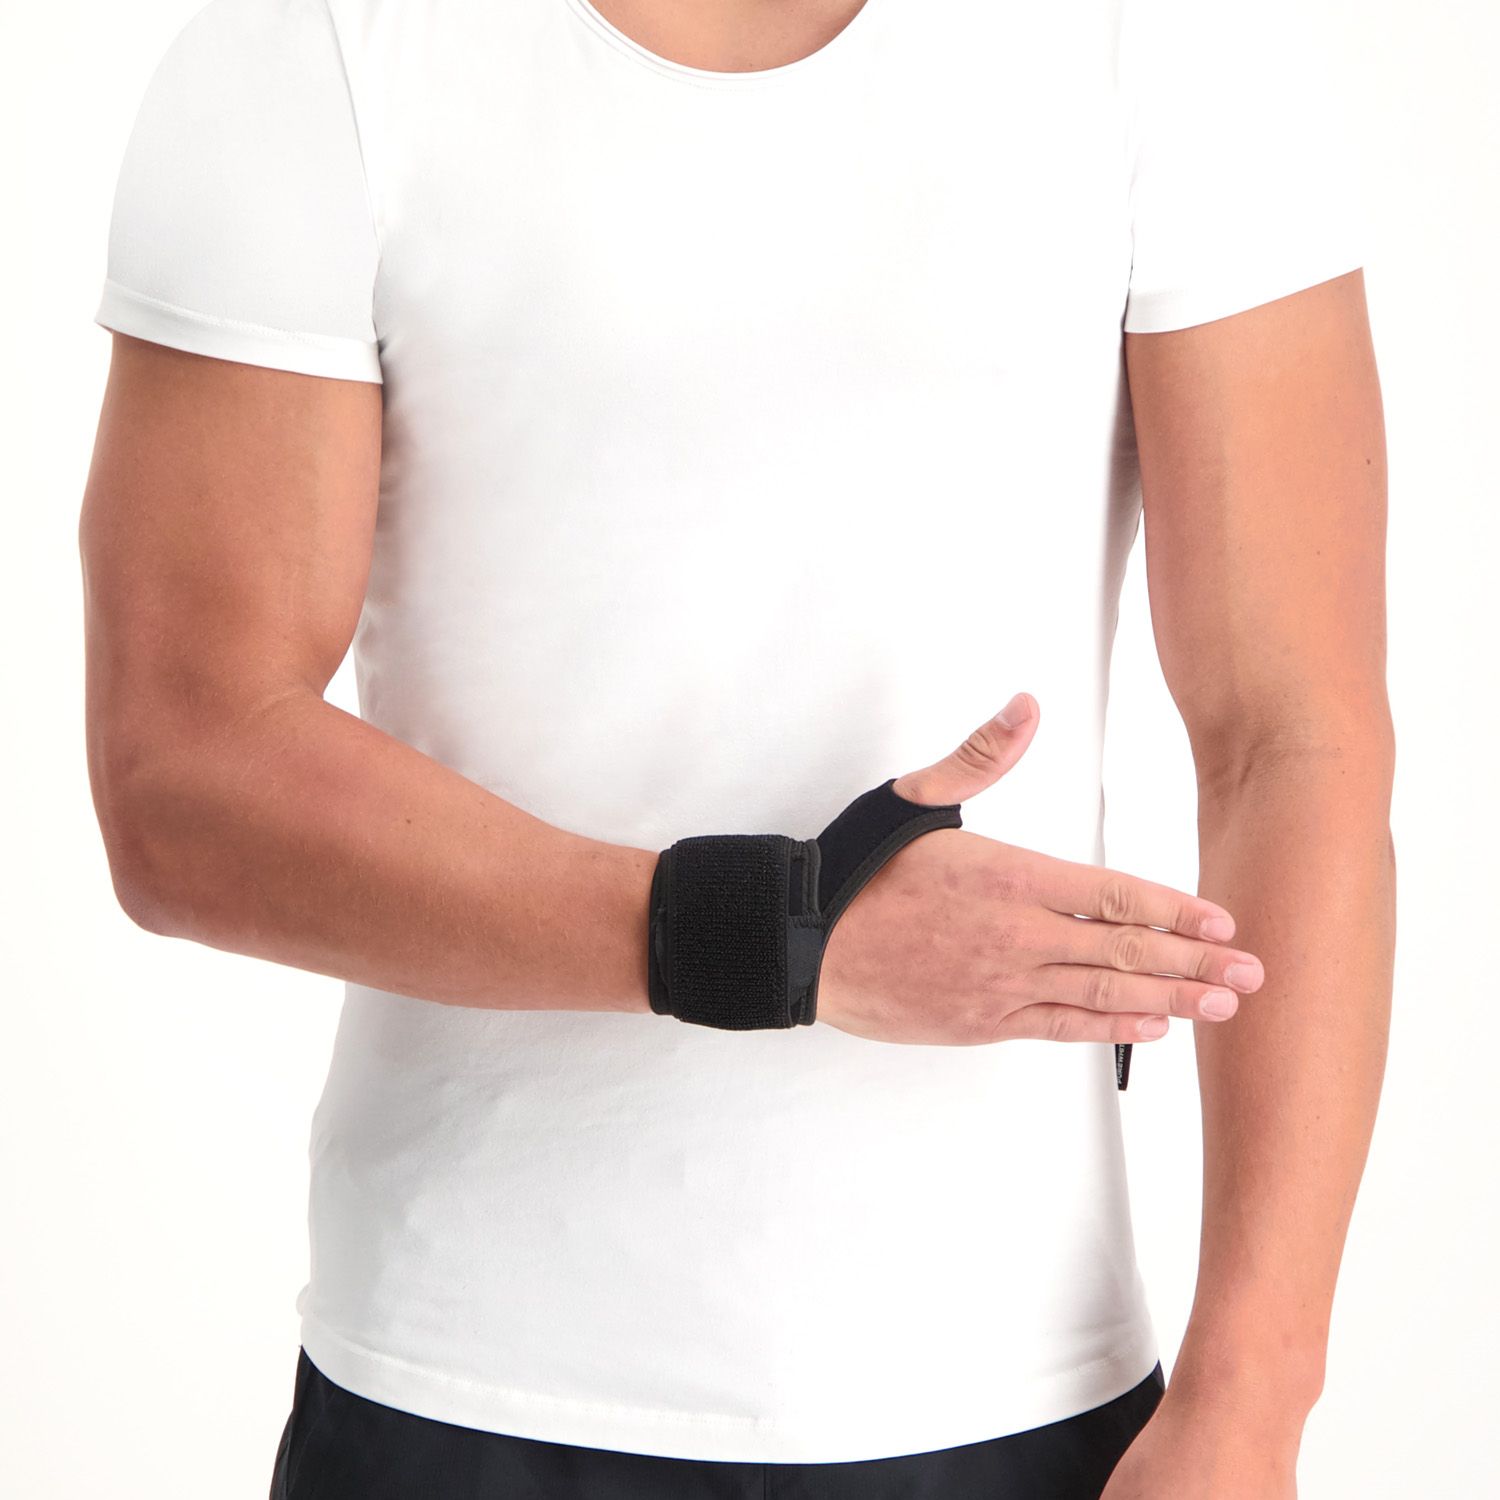 Medidu Wrist Support worn by model